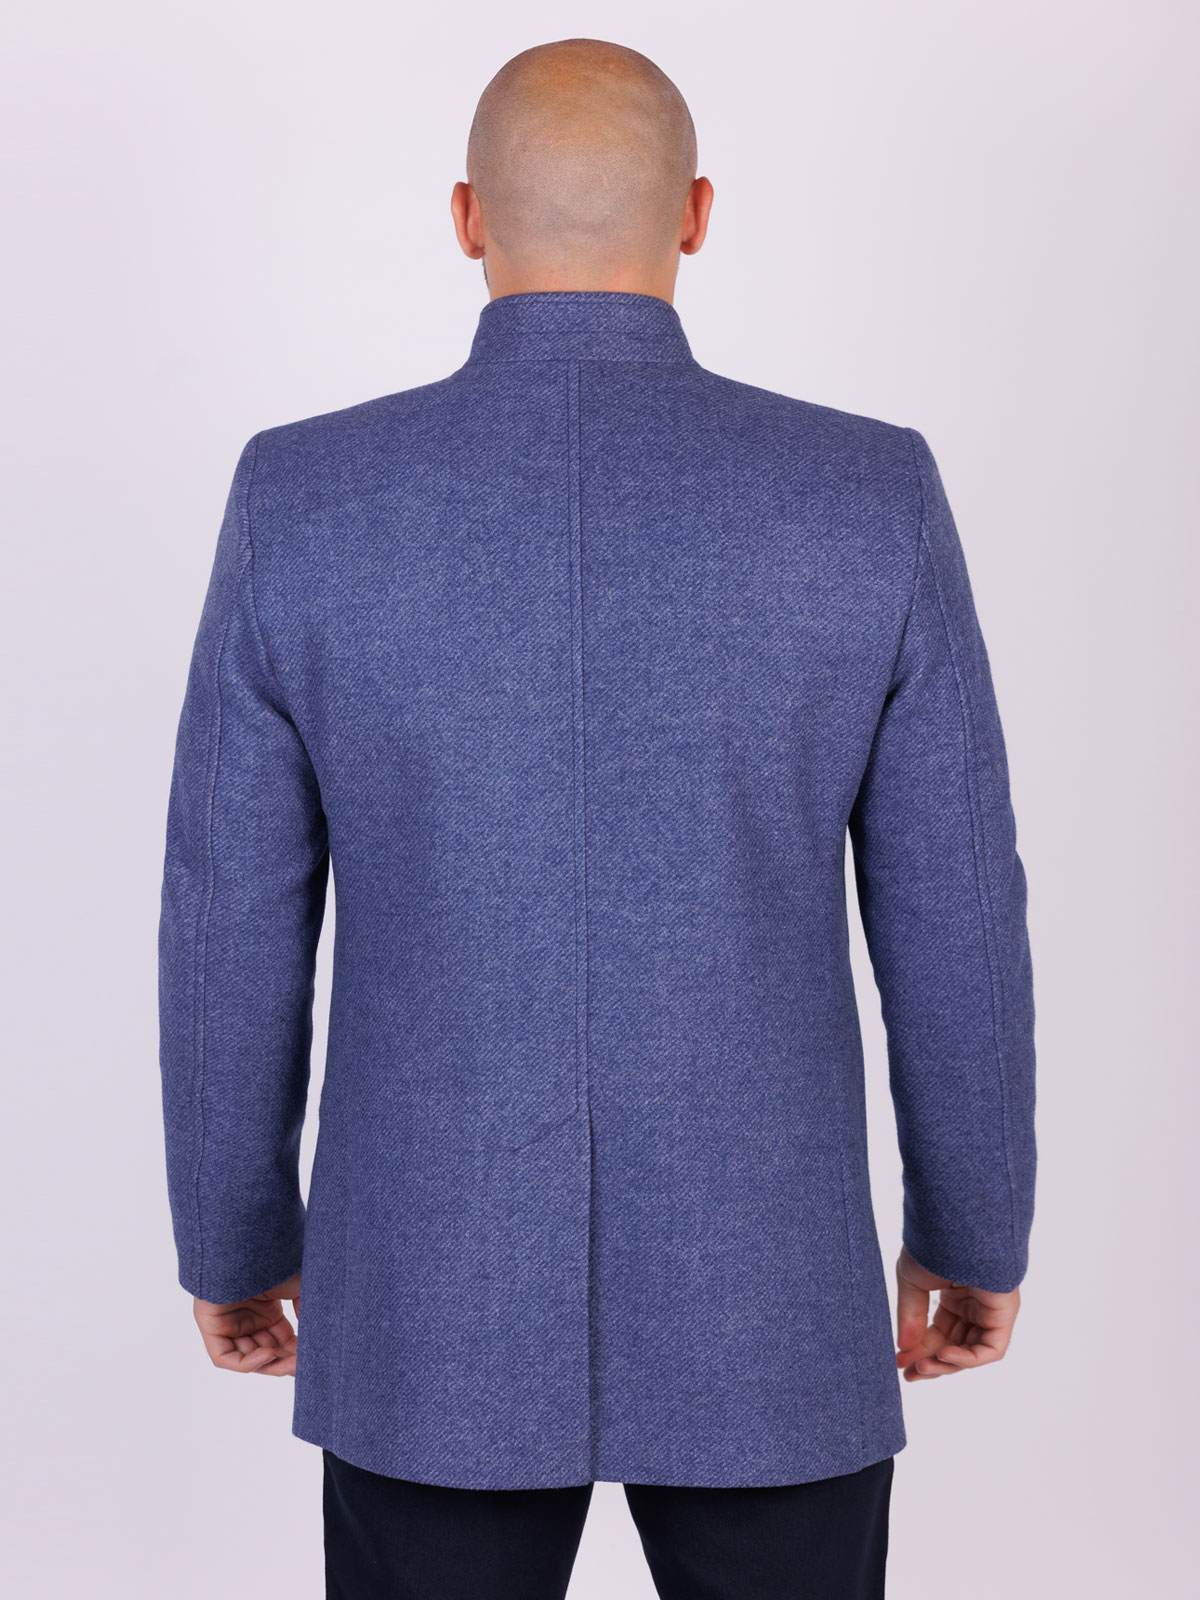 Palton lung pentru bărbați în albastru - 65125 € 167.60 img2